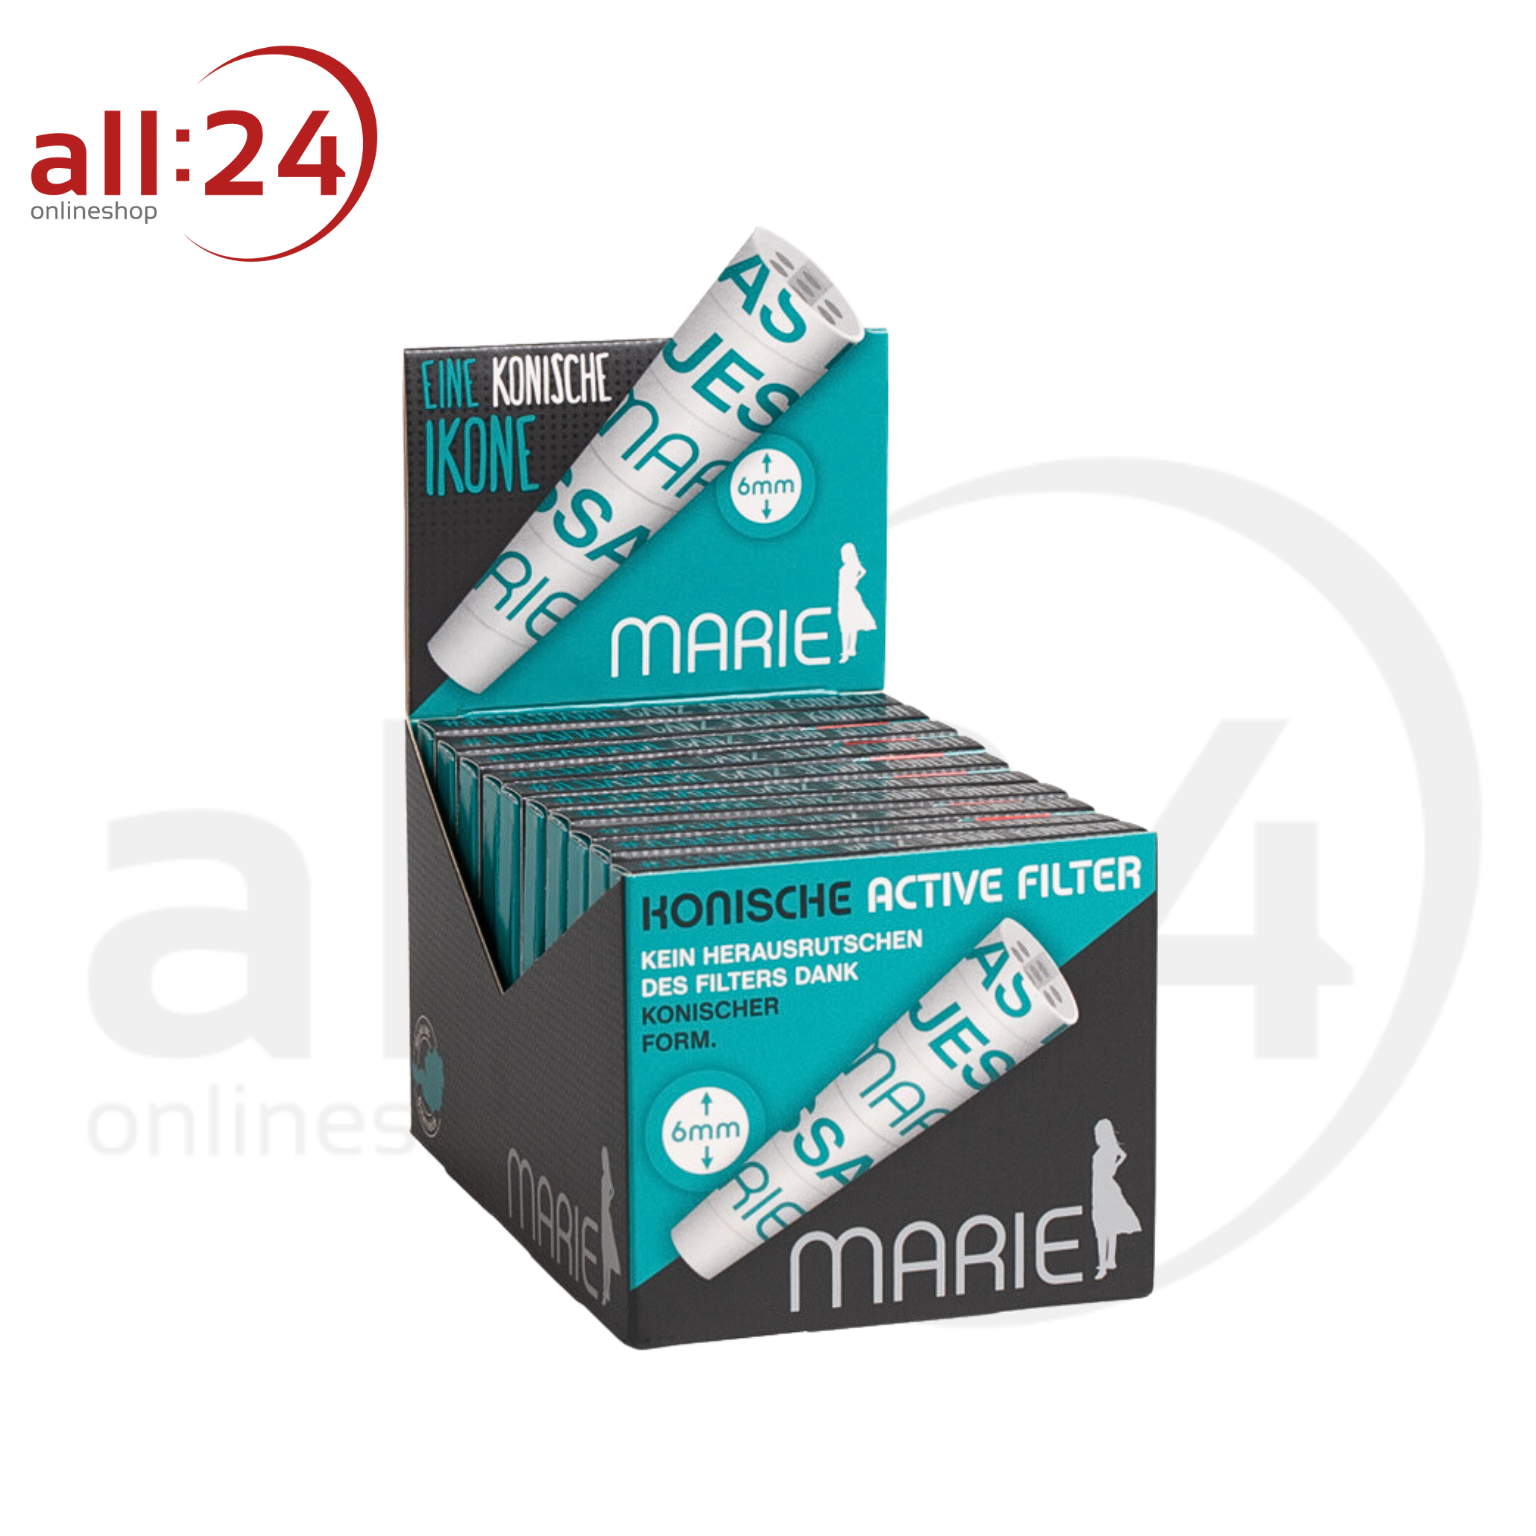 MARIE Active Filter Konisch 6mm - 20 Boxen à 10 konischen Aktivkohlefiltern